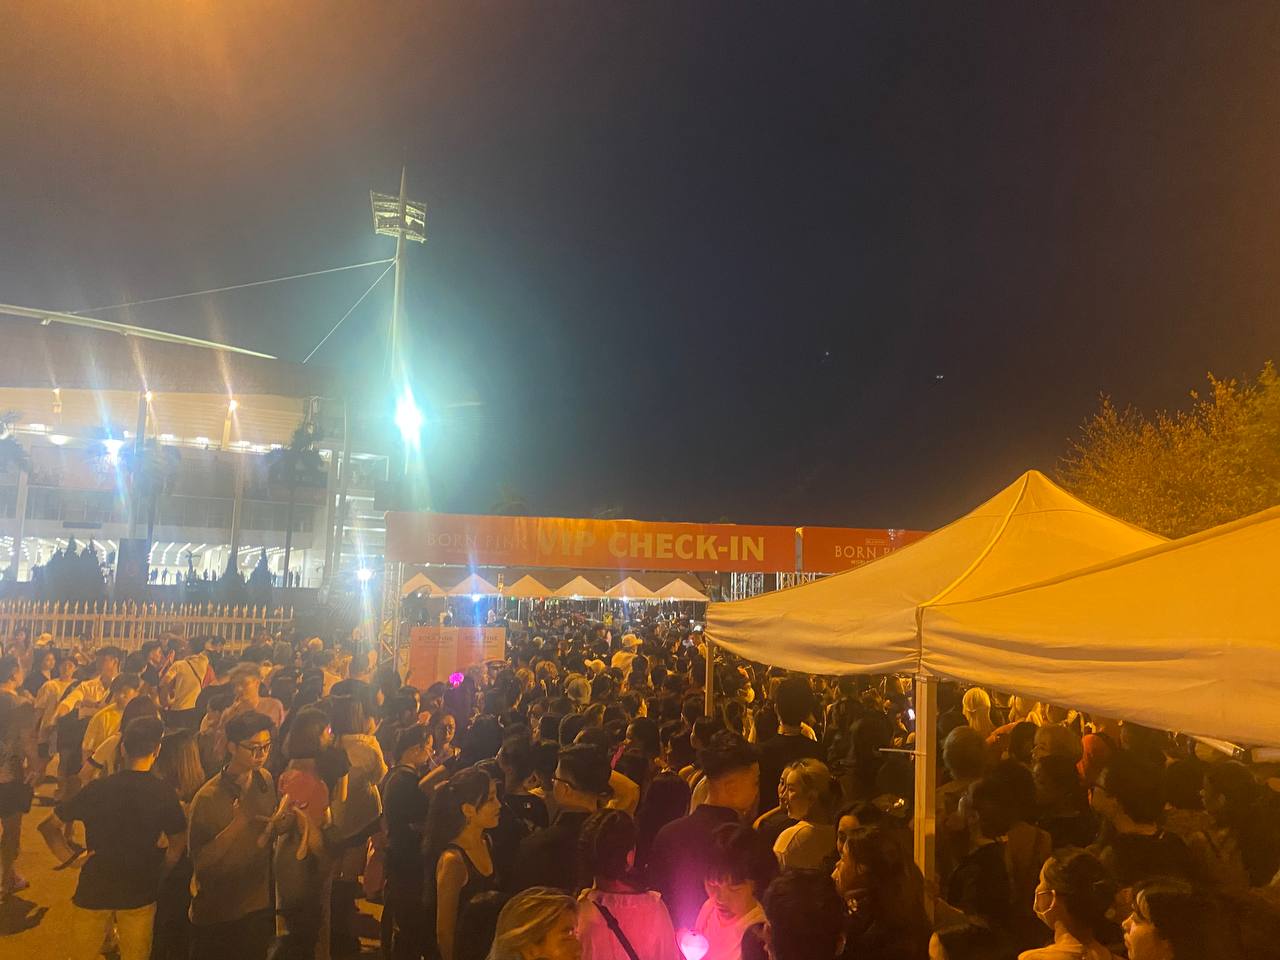 Các gia đình đến ủng hộ đêm diễn cuối cùng của BLACKPINK tại Hà Nội, nhiều người chấp nhận ôm vé vì không muốn bị ép giá - Ảnh 1.